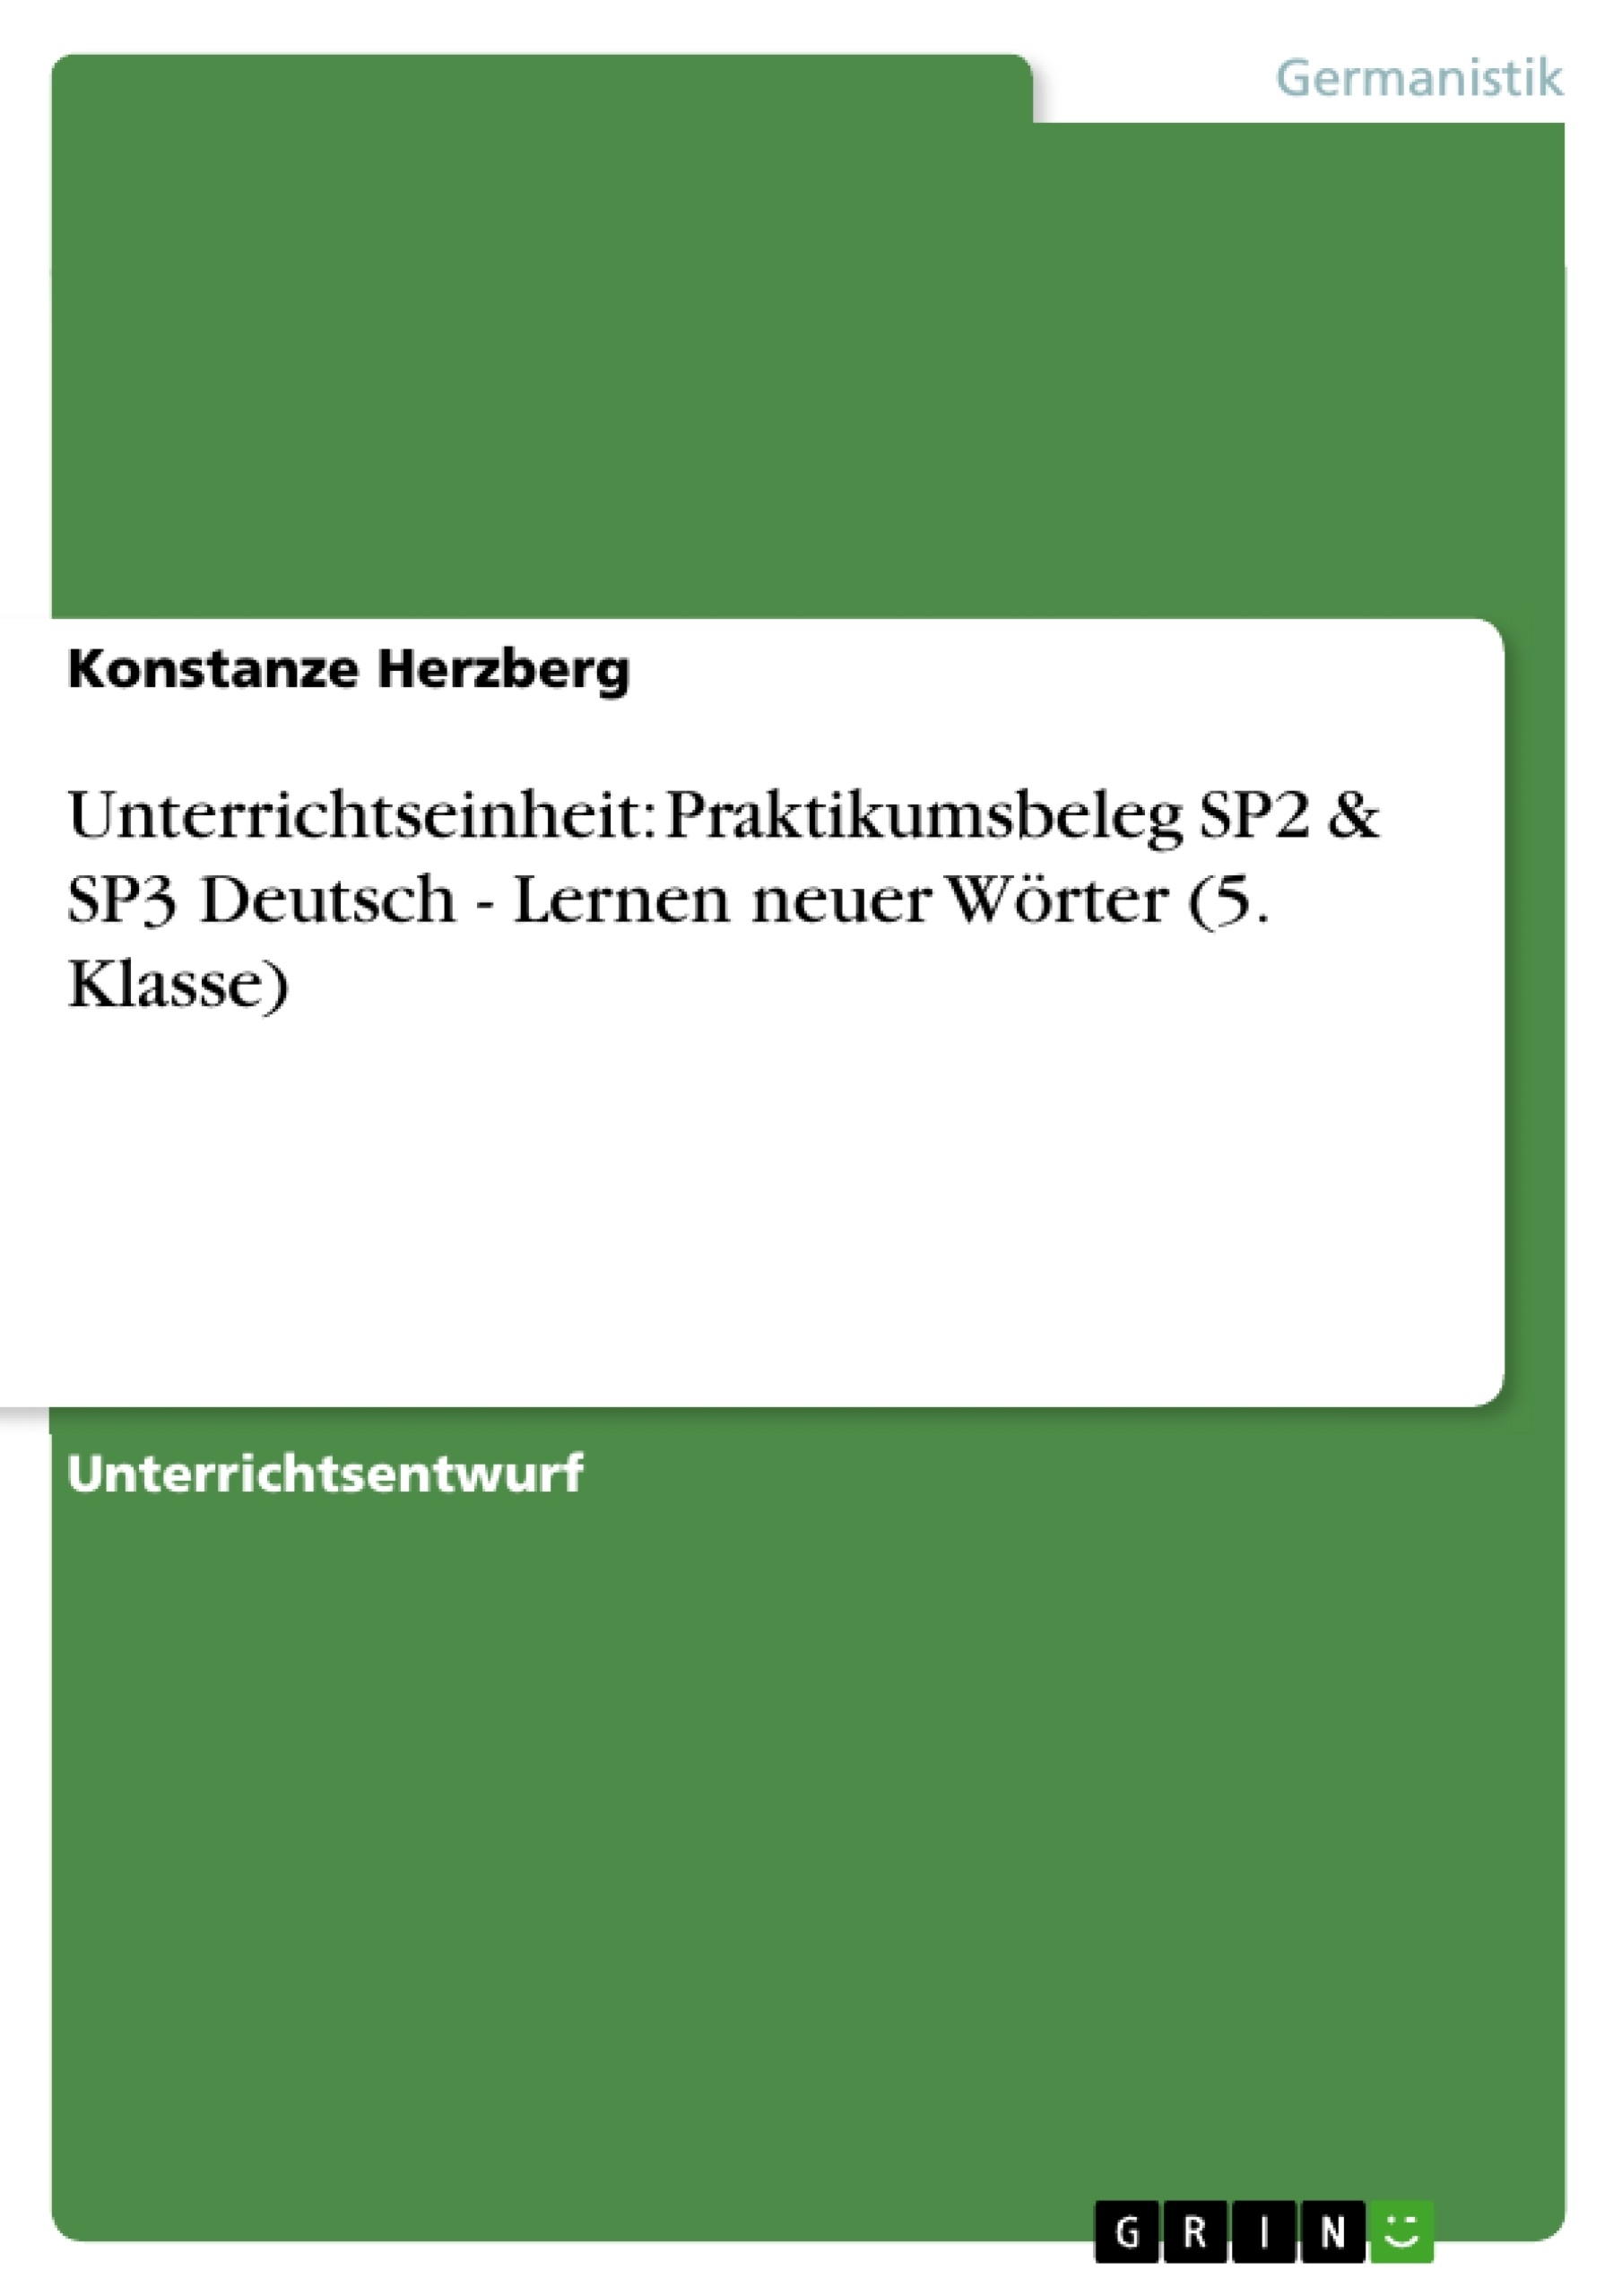 Titel: Unterrichtseinheit: Praktikumsbeleg SP2 & SP3 Deutsch - Lernen neuer Wörter  (5. Klasse)